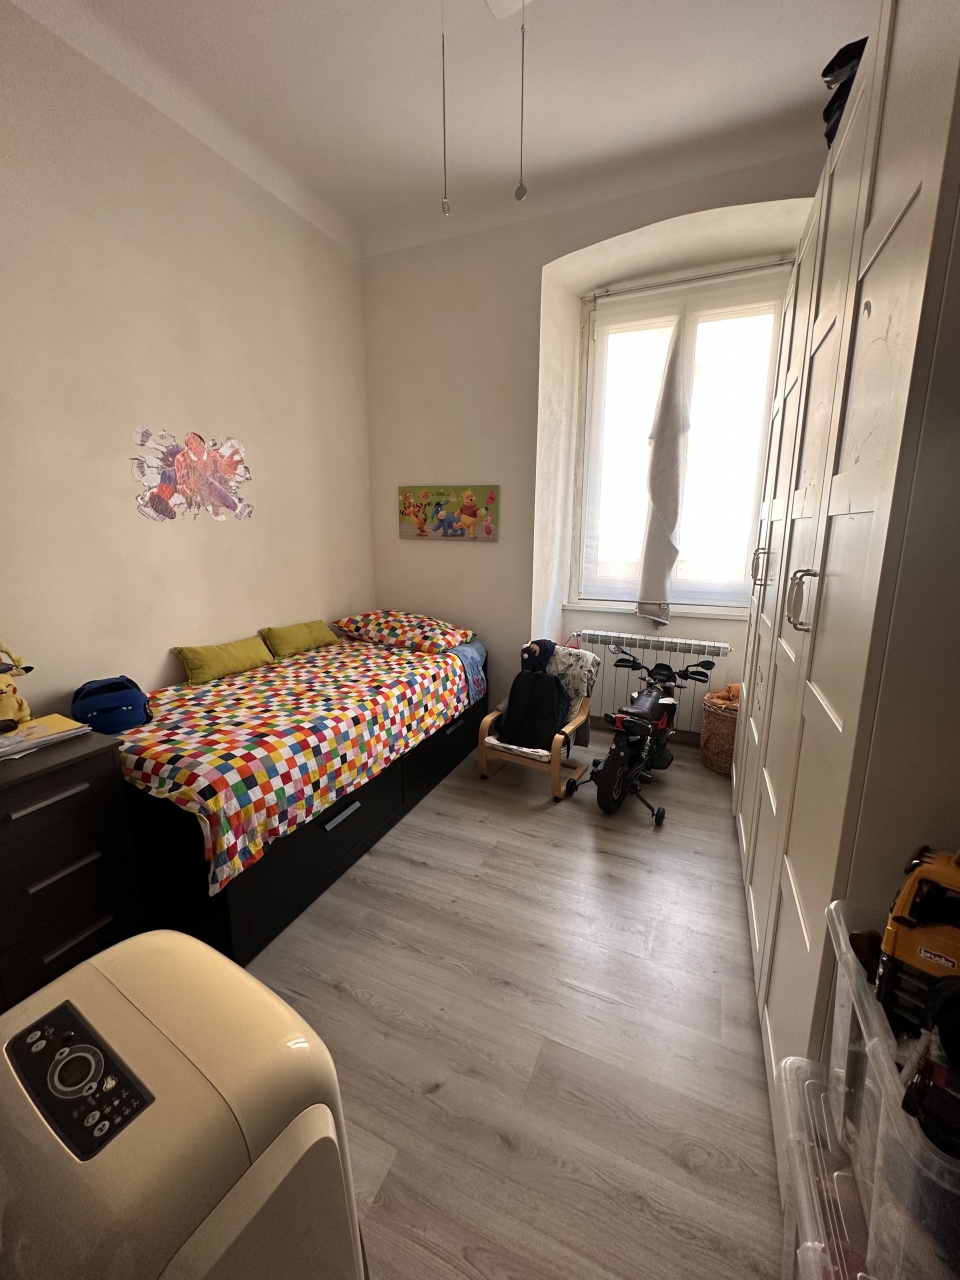 Appartamento ristrutturato in via della libert, Genova